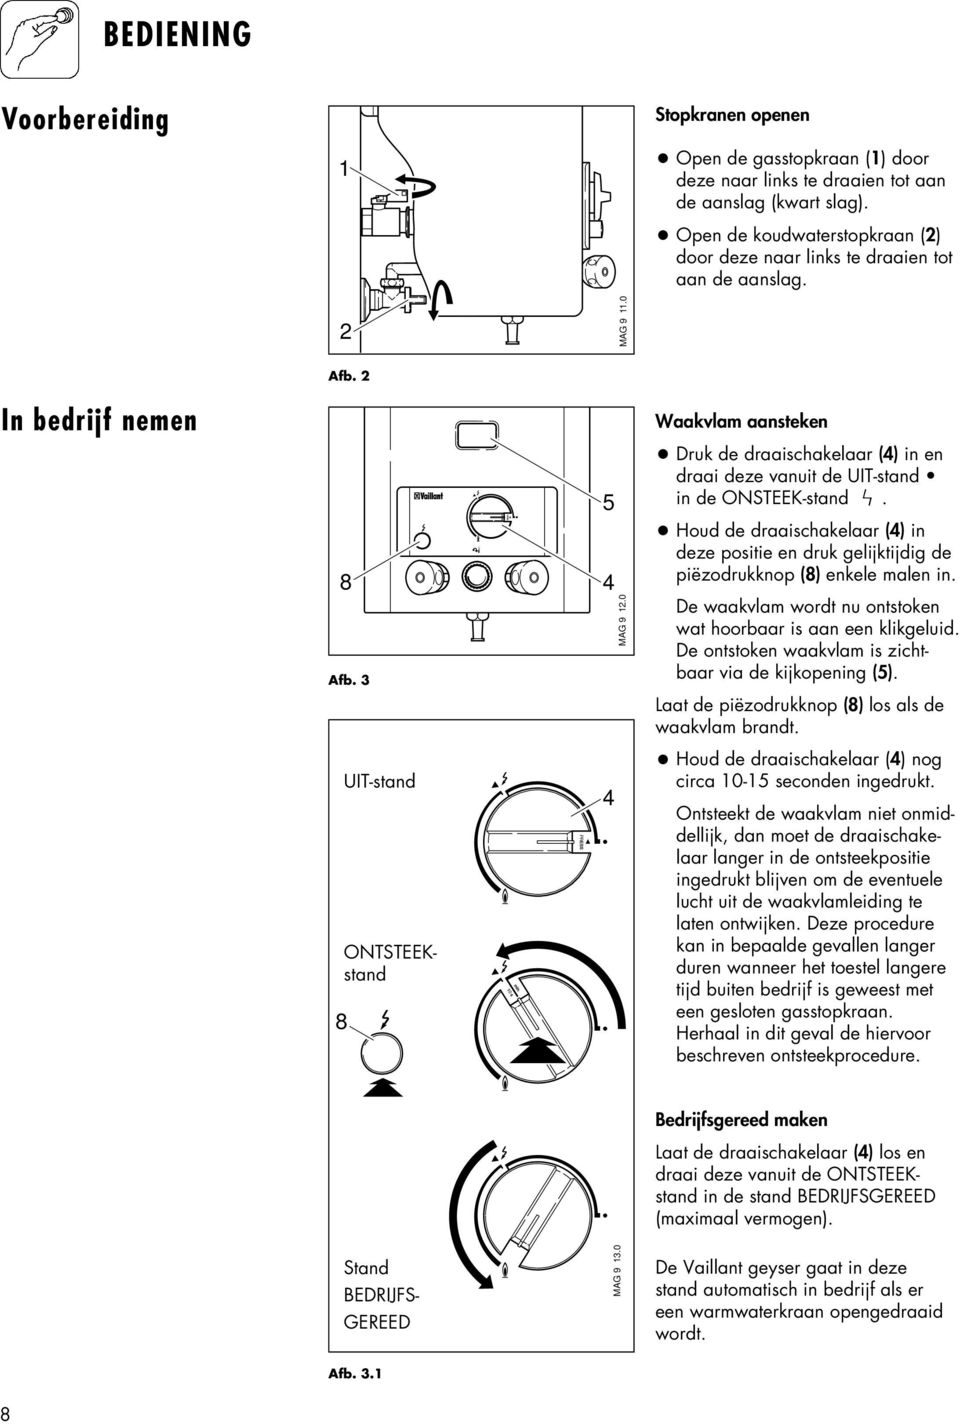 HANDLEIDING VOOR GEBRUIK EN INSTALLATIE. Vaillant Geyser MAG NL 9/1 OZ-DG  met Atmosfeerbeveiliging - PDF Gratis download